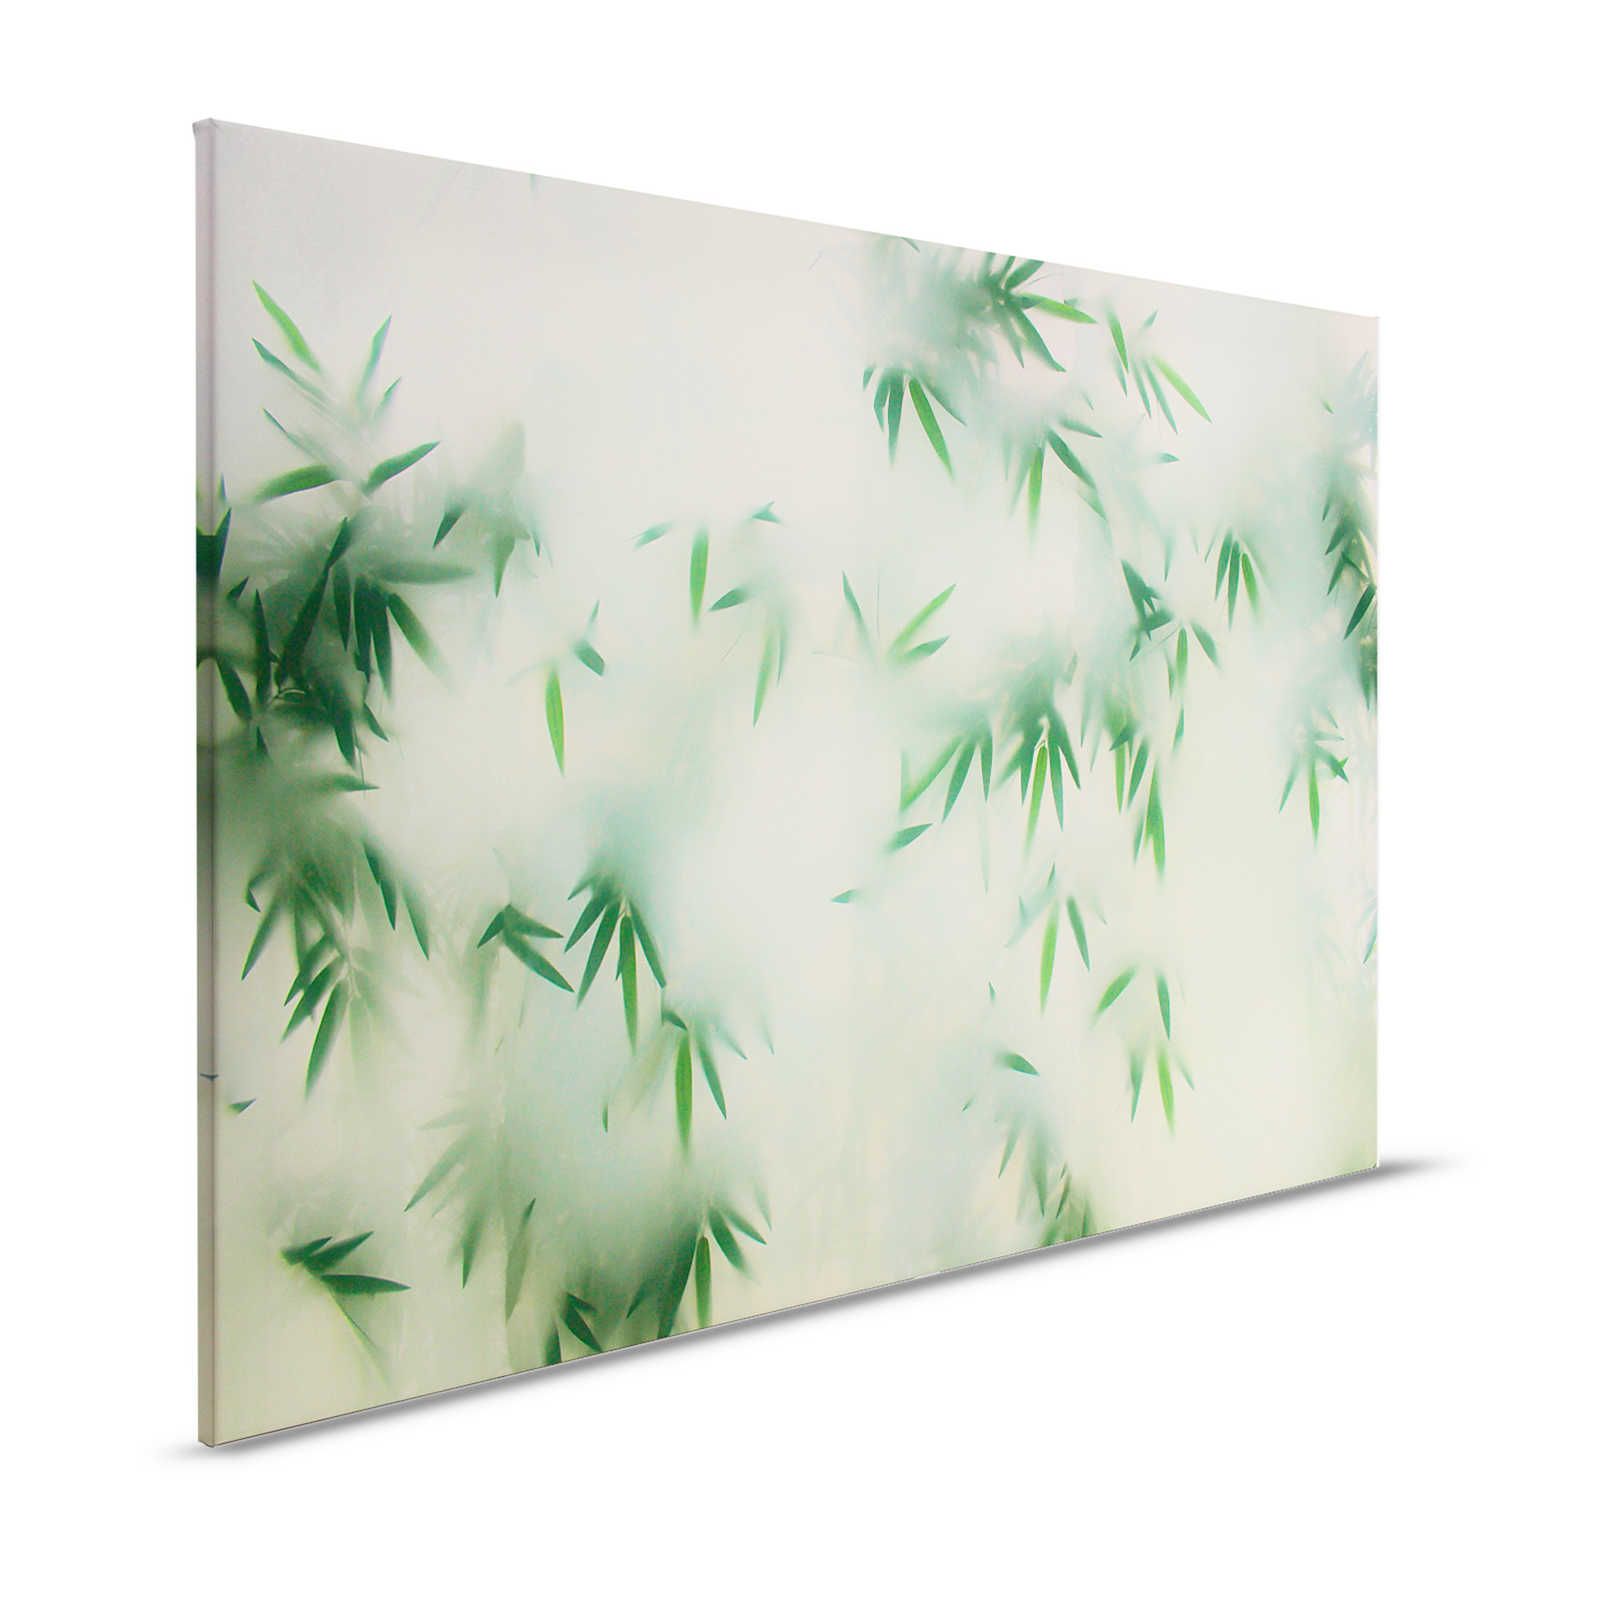 Panda Paradise 2 - Canvas schilderij groene bamboe in de mist - 1,20 m x 0,80 m
